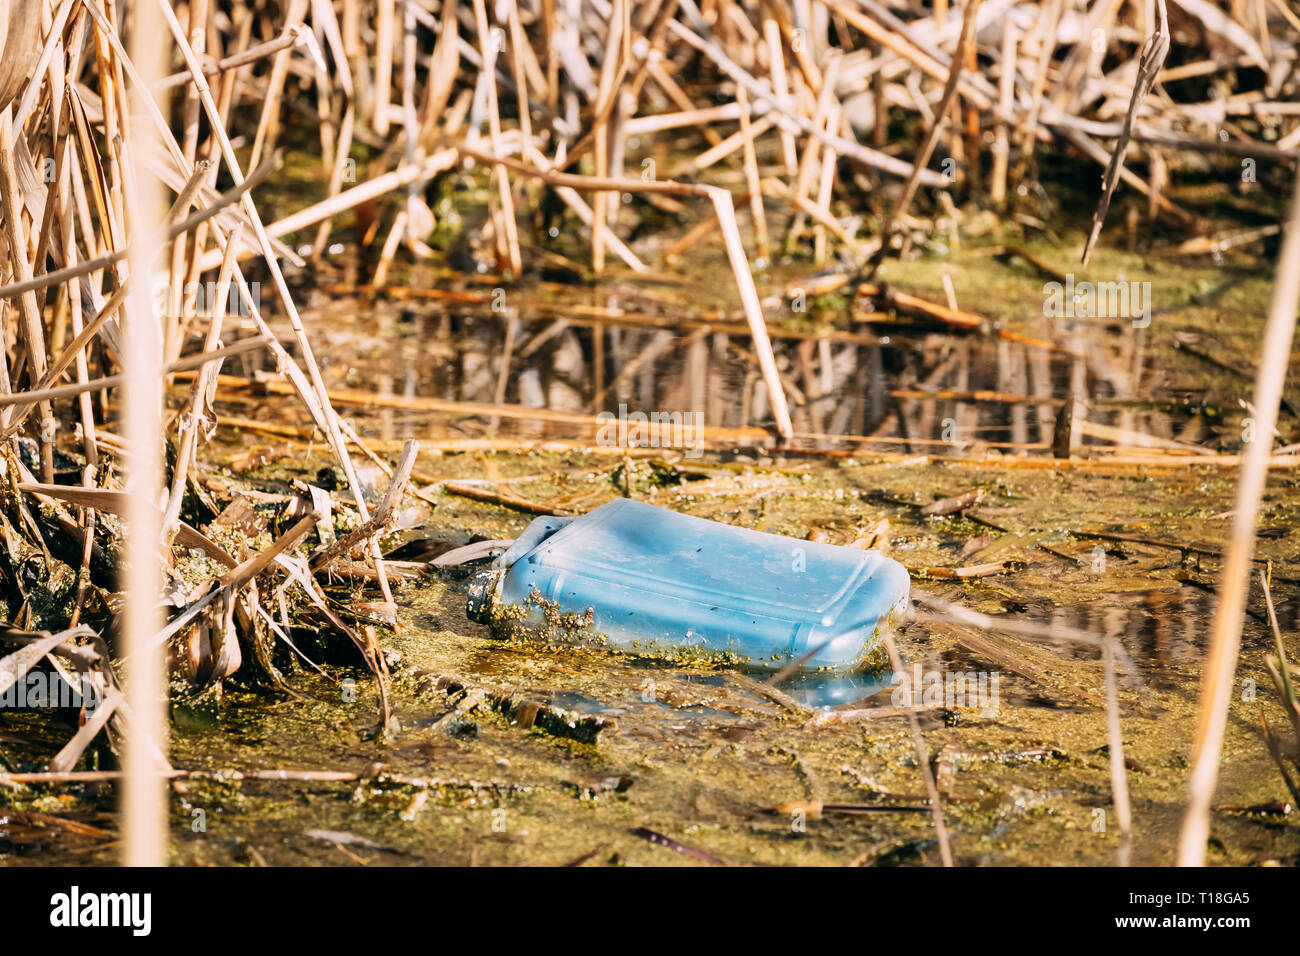 Ancien bidon en plastique flotte dans l'eau des marais ou d'un étang. Utilisé des matériaux d'emballage vide laissé dans l'eau. Concept de catastrophe écologique déchets écologique Banque D'Images